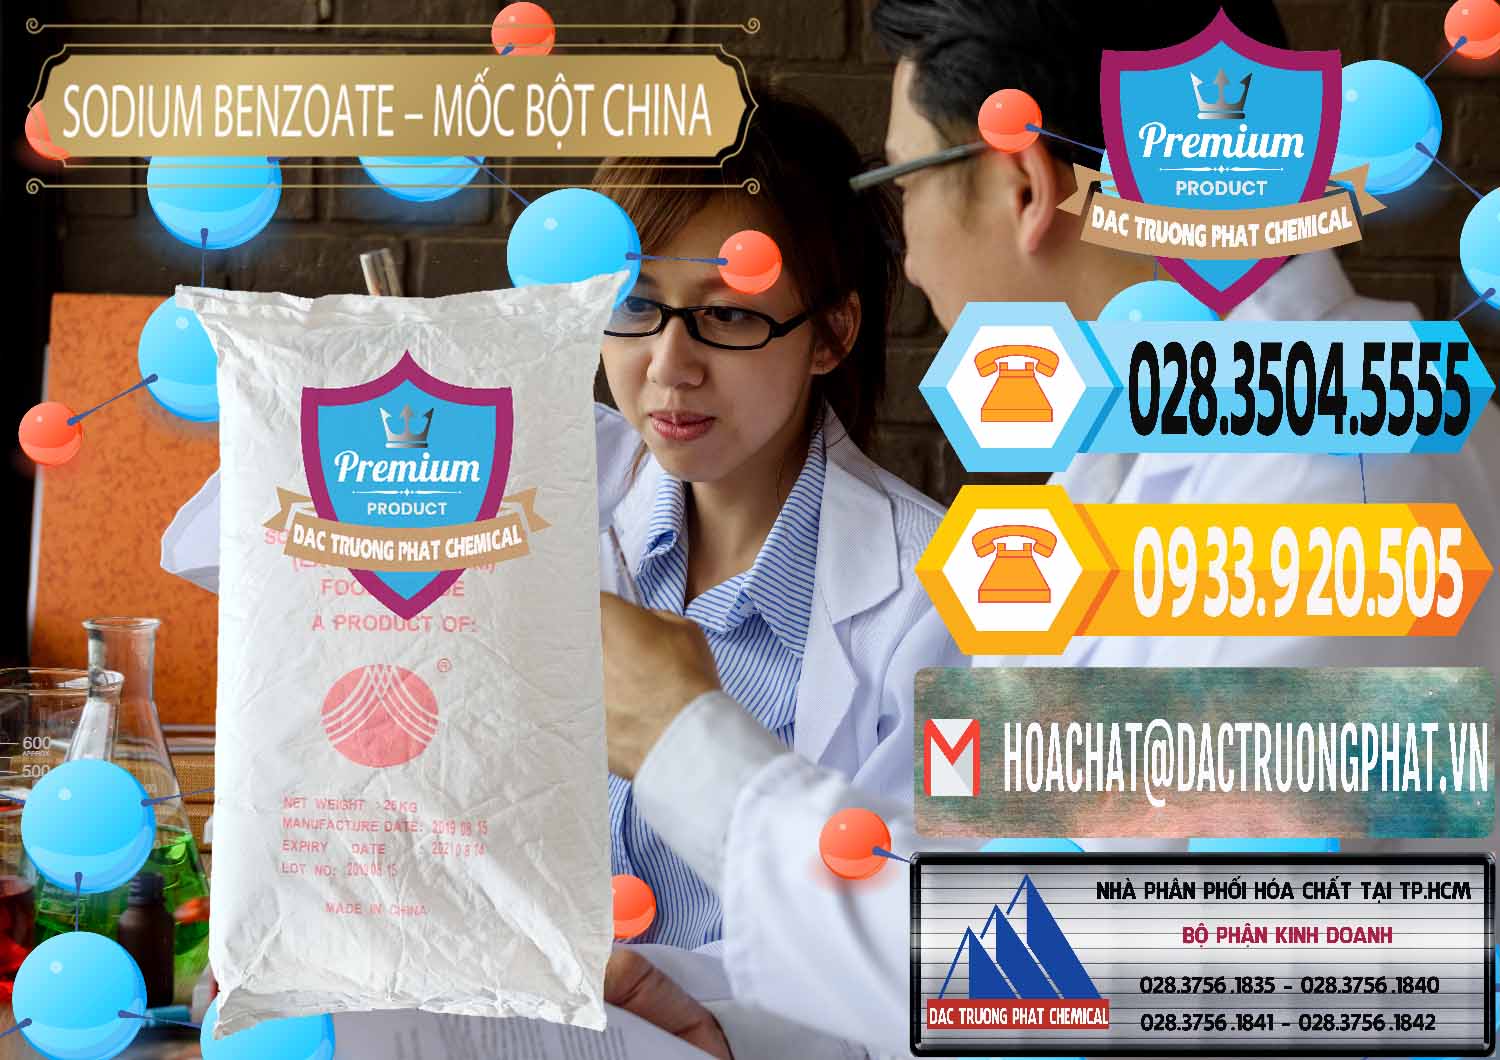 Chuyên bán _ phân phối Sodium Benzoate - Mốc Bột Chữ Cam Food Grade Trung Quốc China - 0135 - Chuyên phân phối _ cung ứng hóa chất tại TP.HCM - hoachattayrua.net